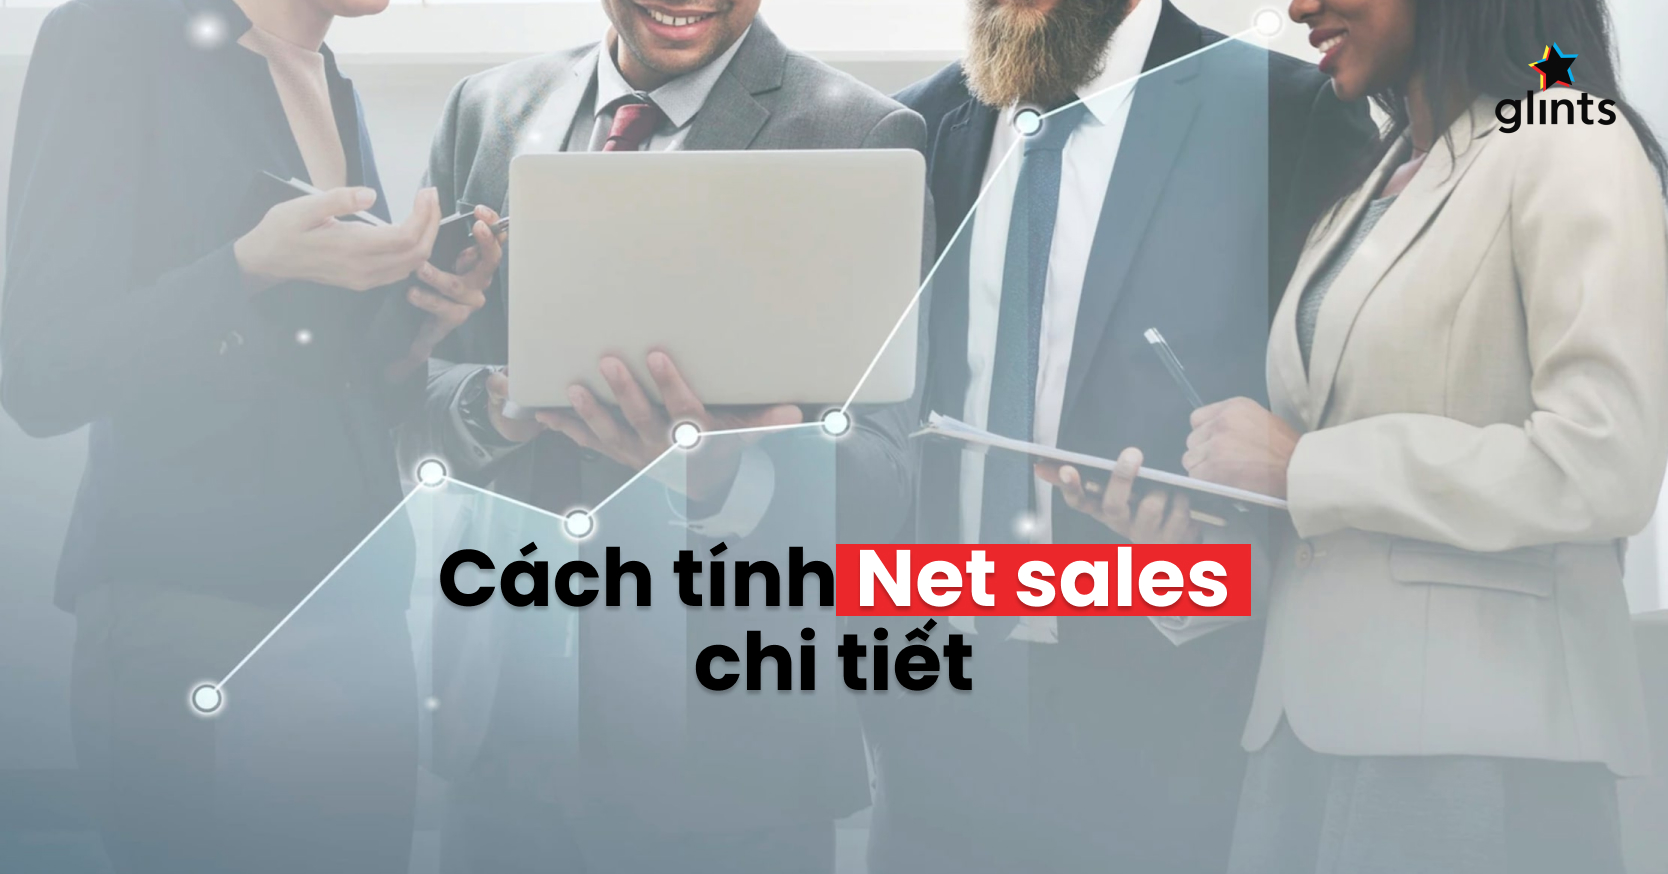 Trang web với ảnh liên quan đến net sales sẽ giúp bạn hiểu hơn về cách quản lý và tăng doanh số của doanh nghiệp mình.